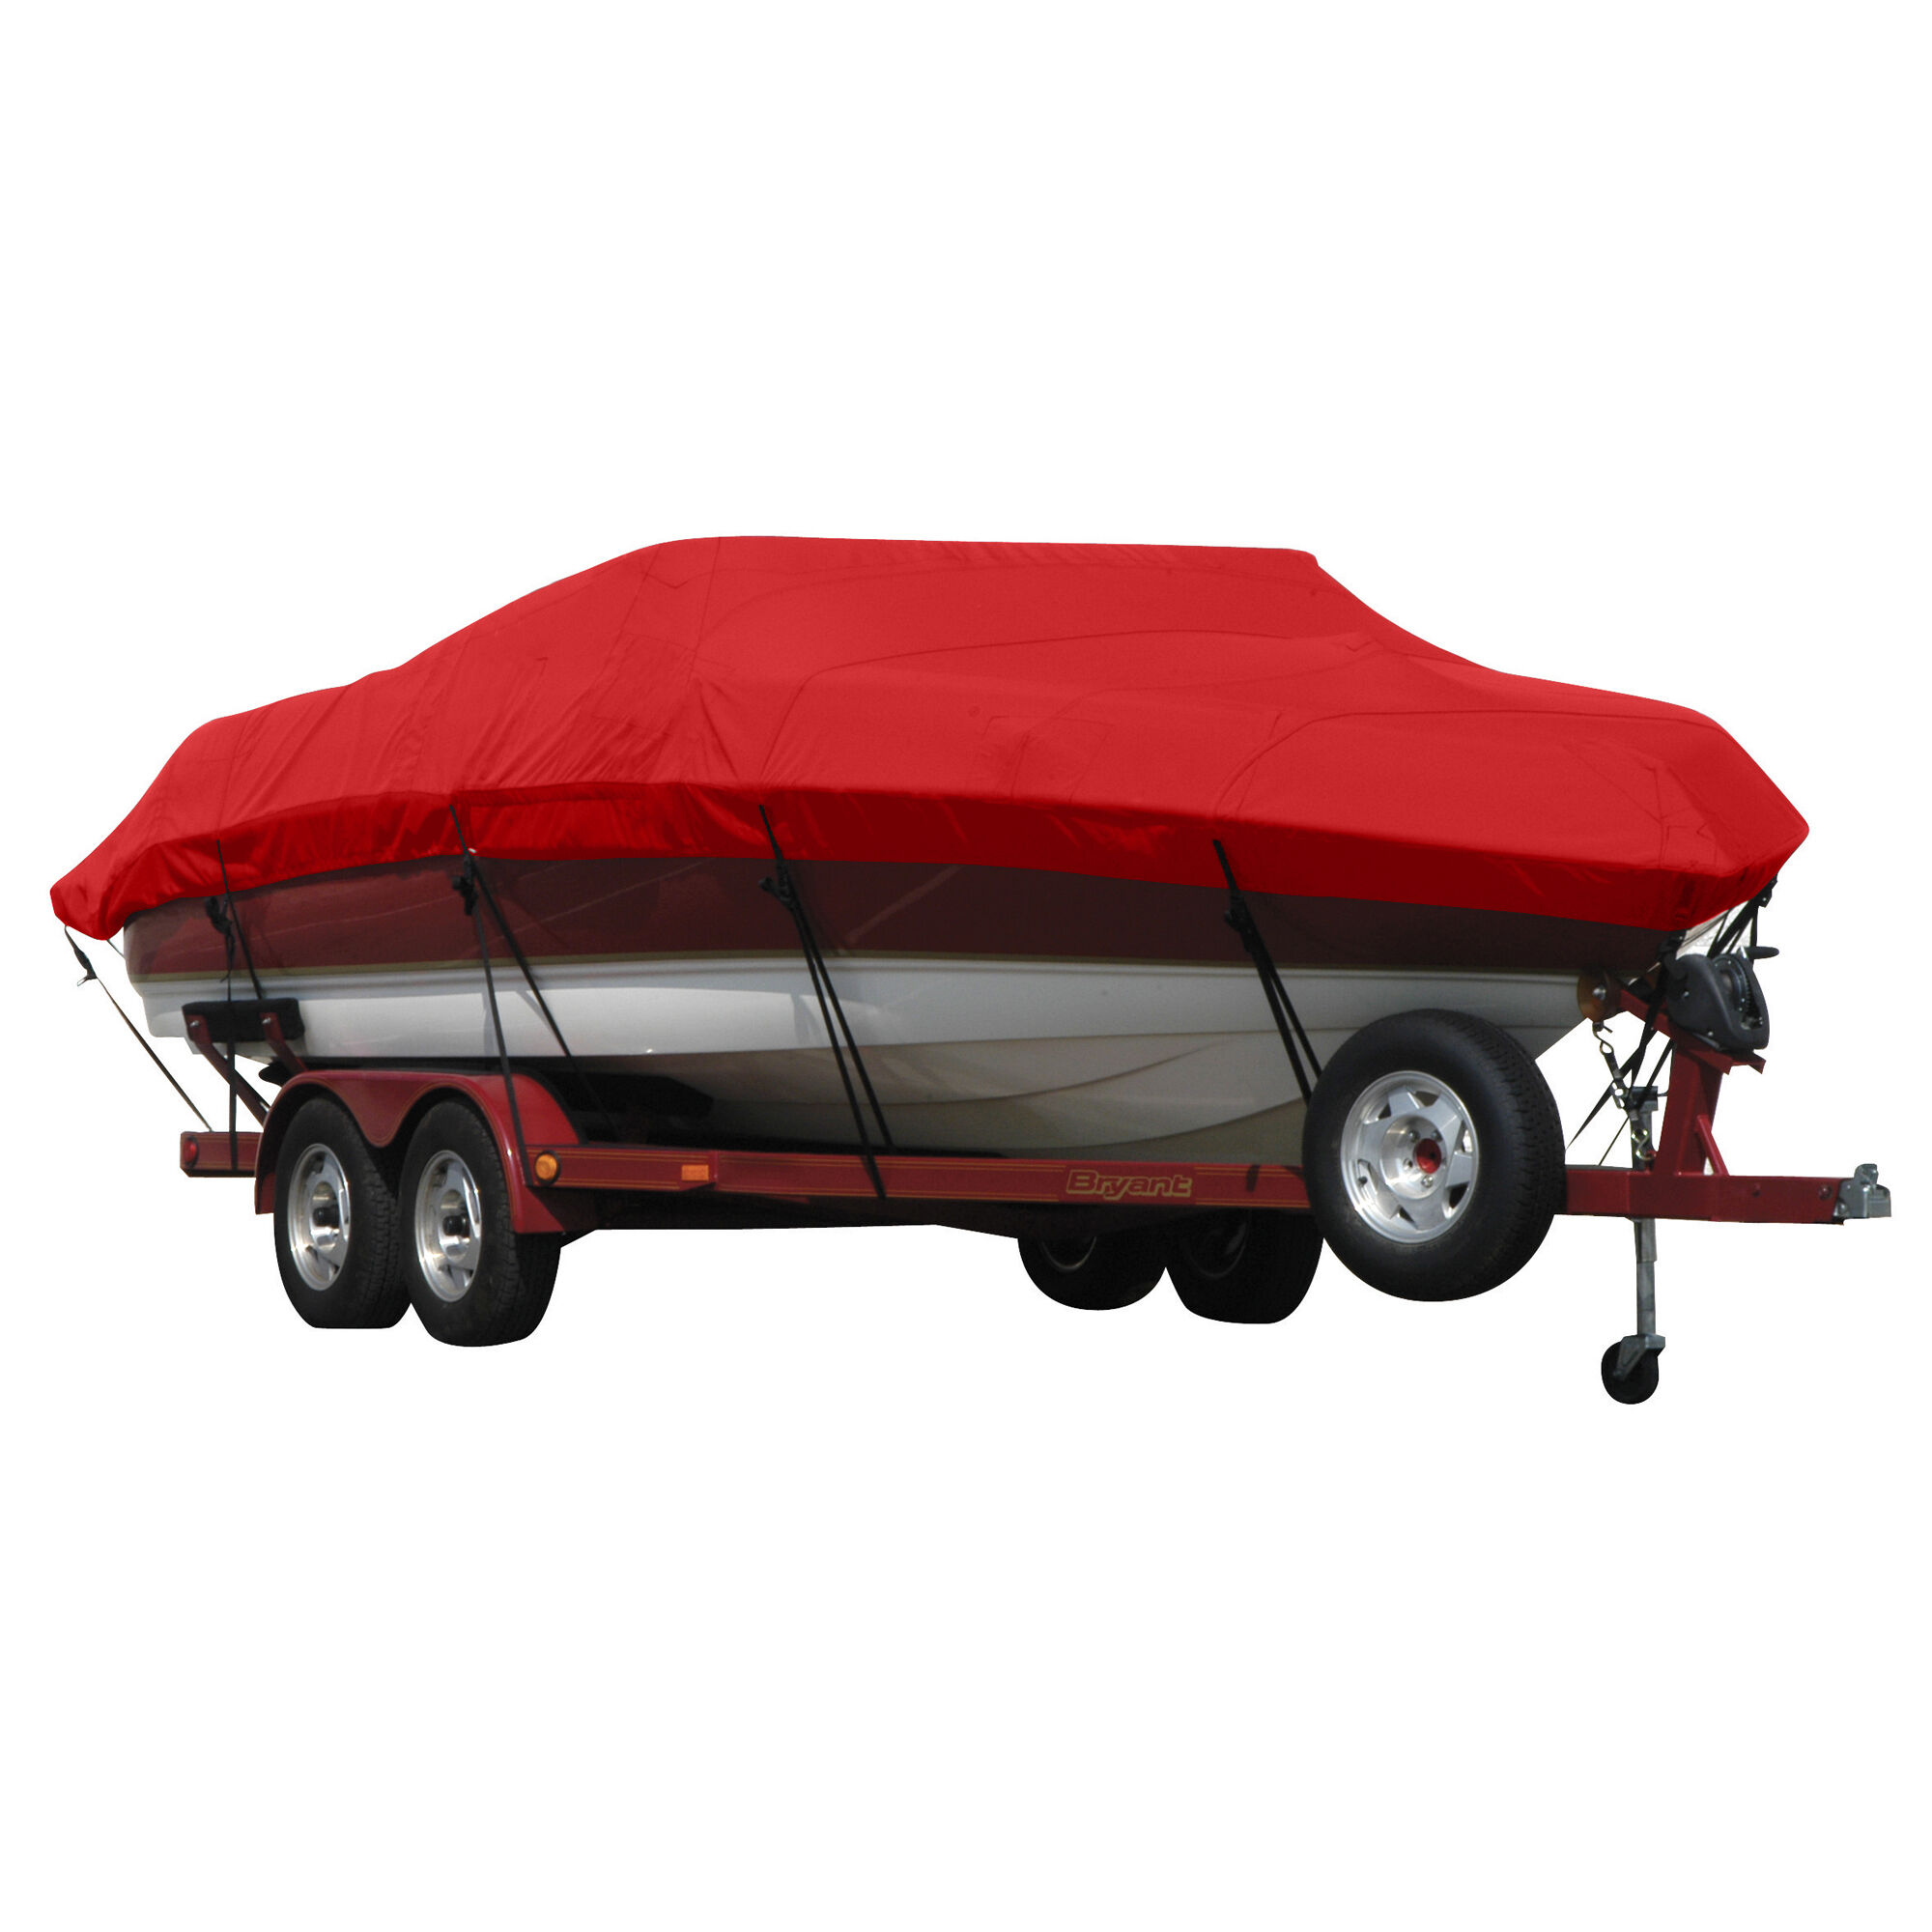 Covermate Exact Fit Sunbrella Boat Cover for Seaswirl Striper 2100 Striper 2100 Hard Top I/O. Jockey Red